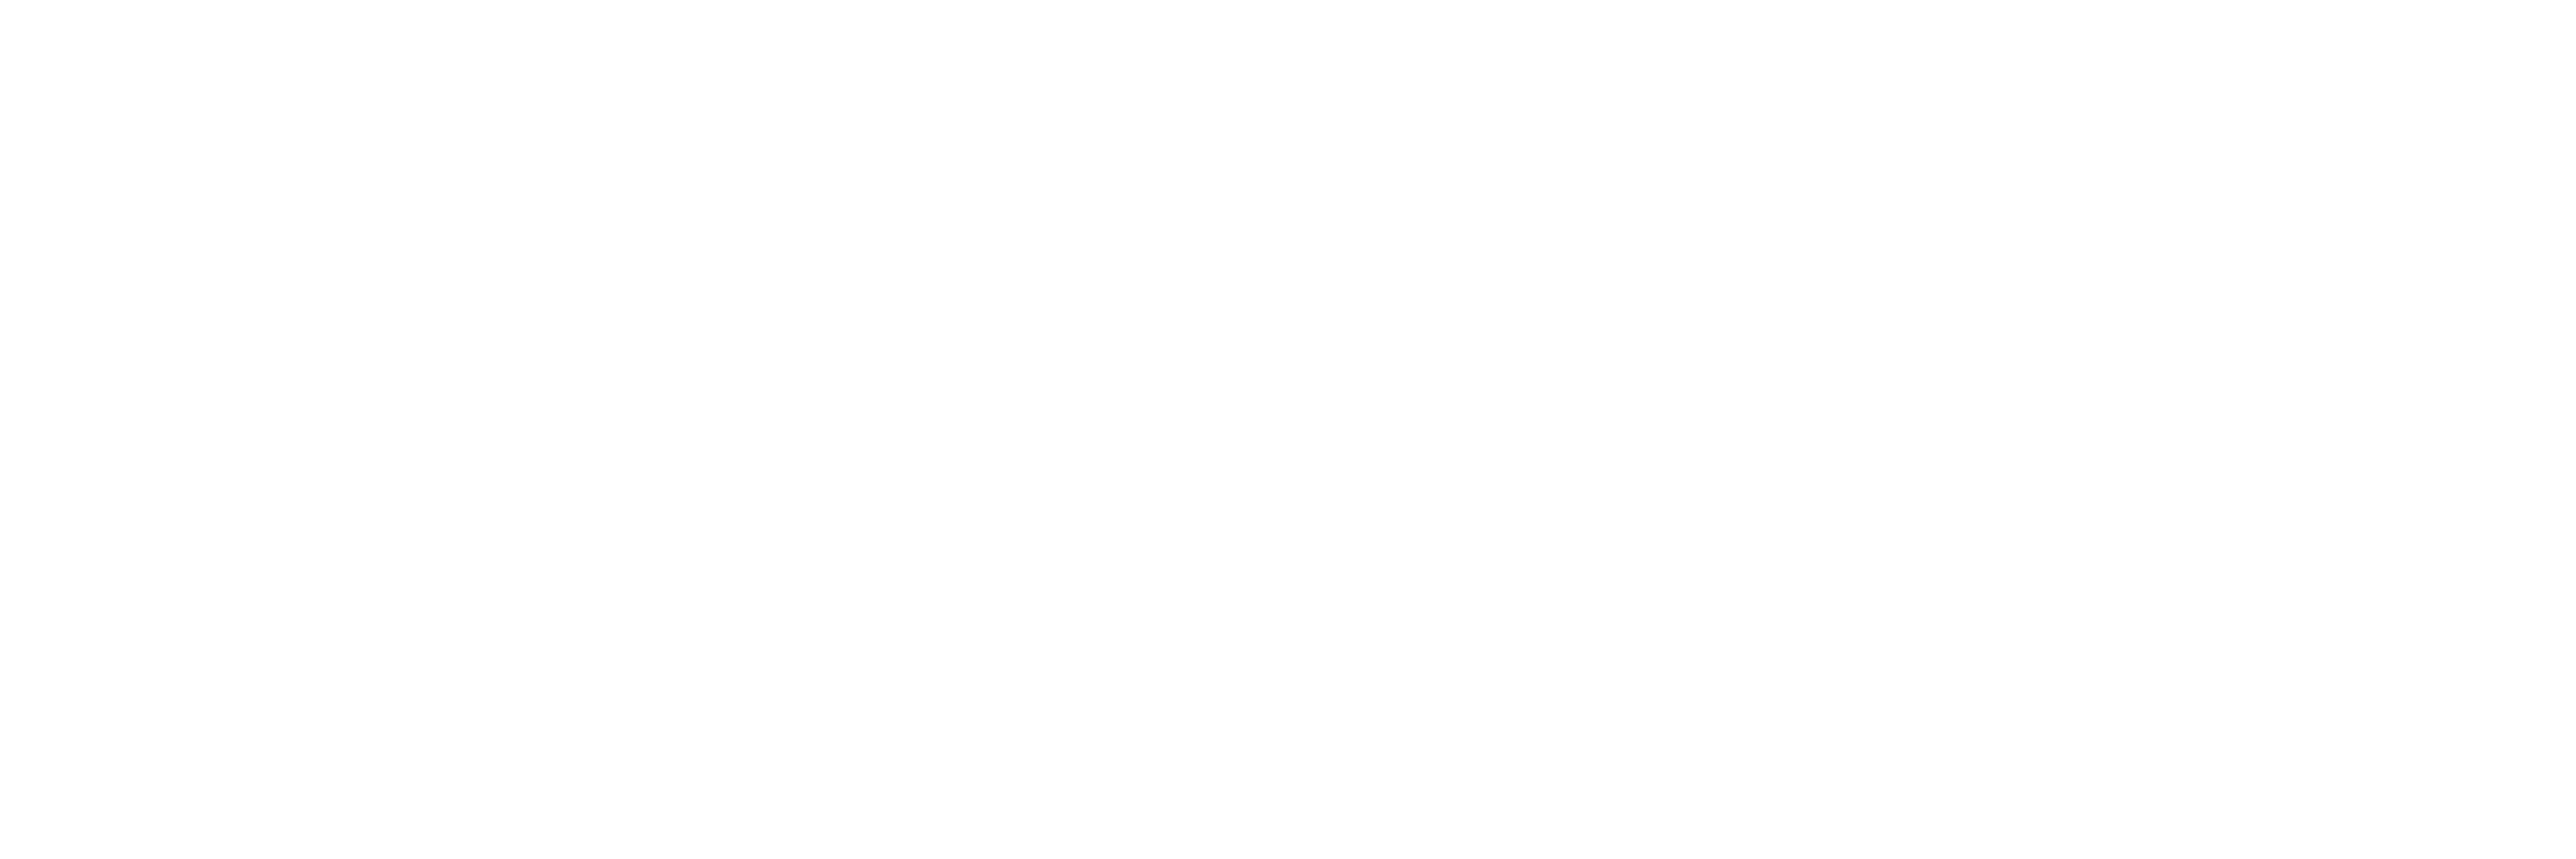 Star Hands Organisation